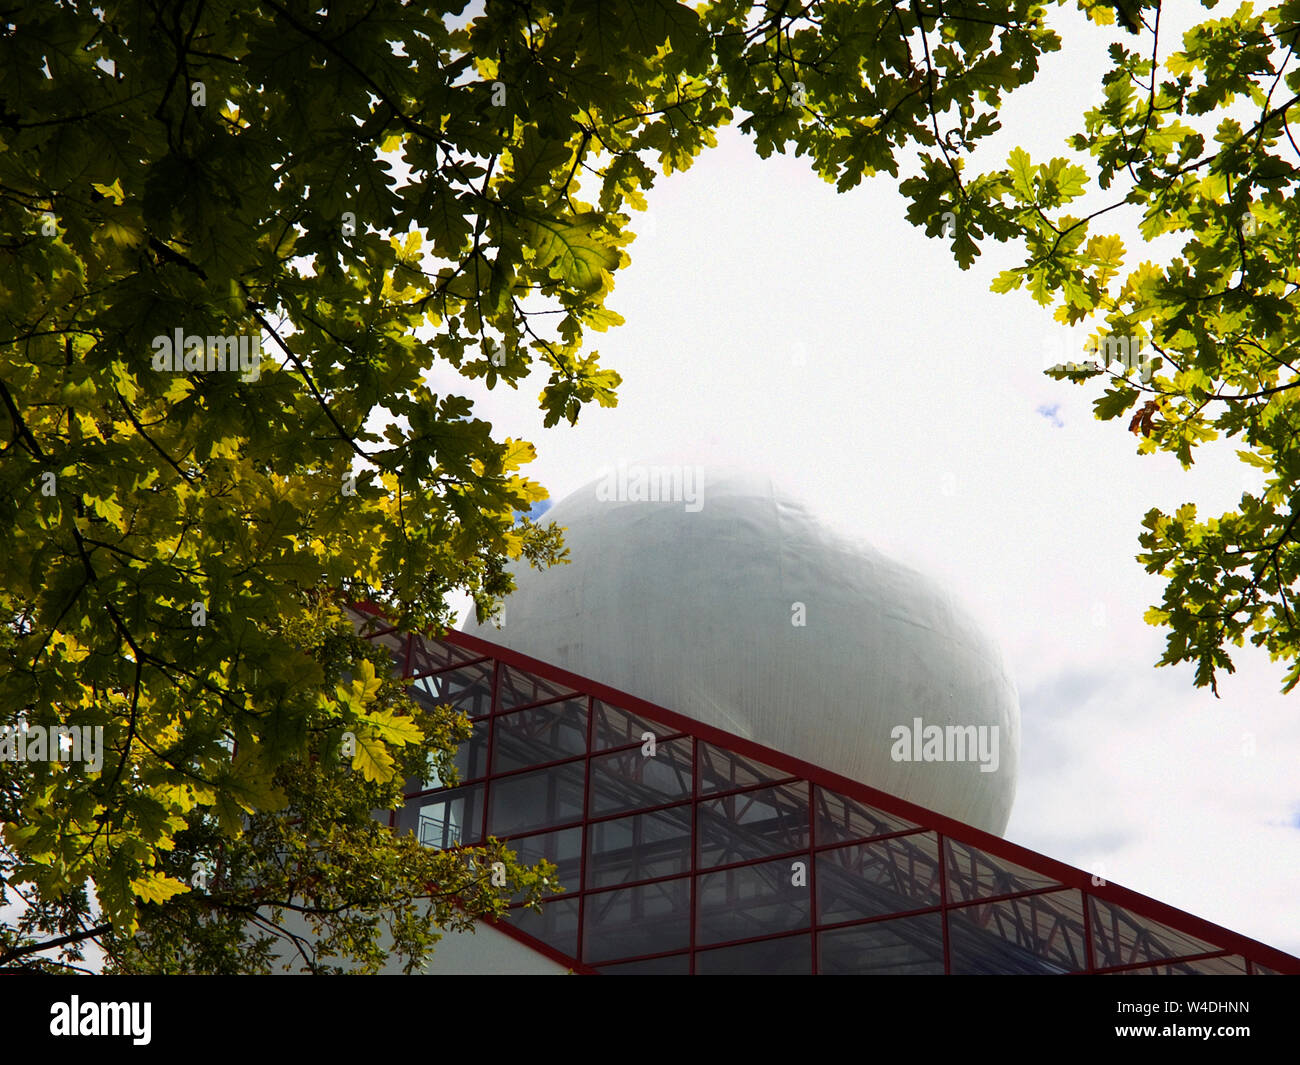 Pavillon du Futuroscope, Parc du Futuroscope, la Vienne, Nouvelle-Aquitaine, France : architecture d'avant-garde : prisme de verre et giant balle blanche Banque D'Images